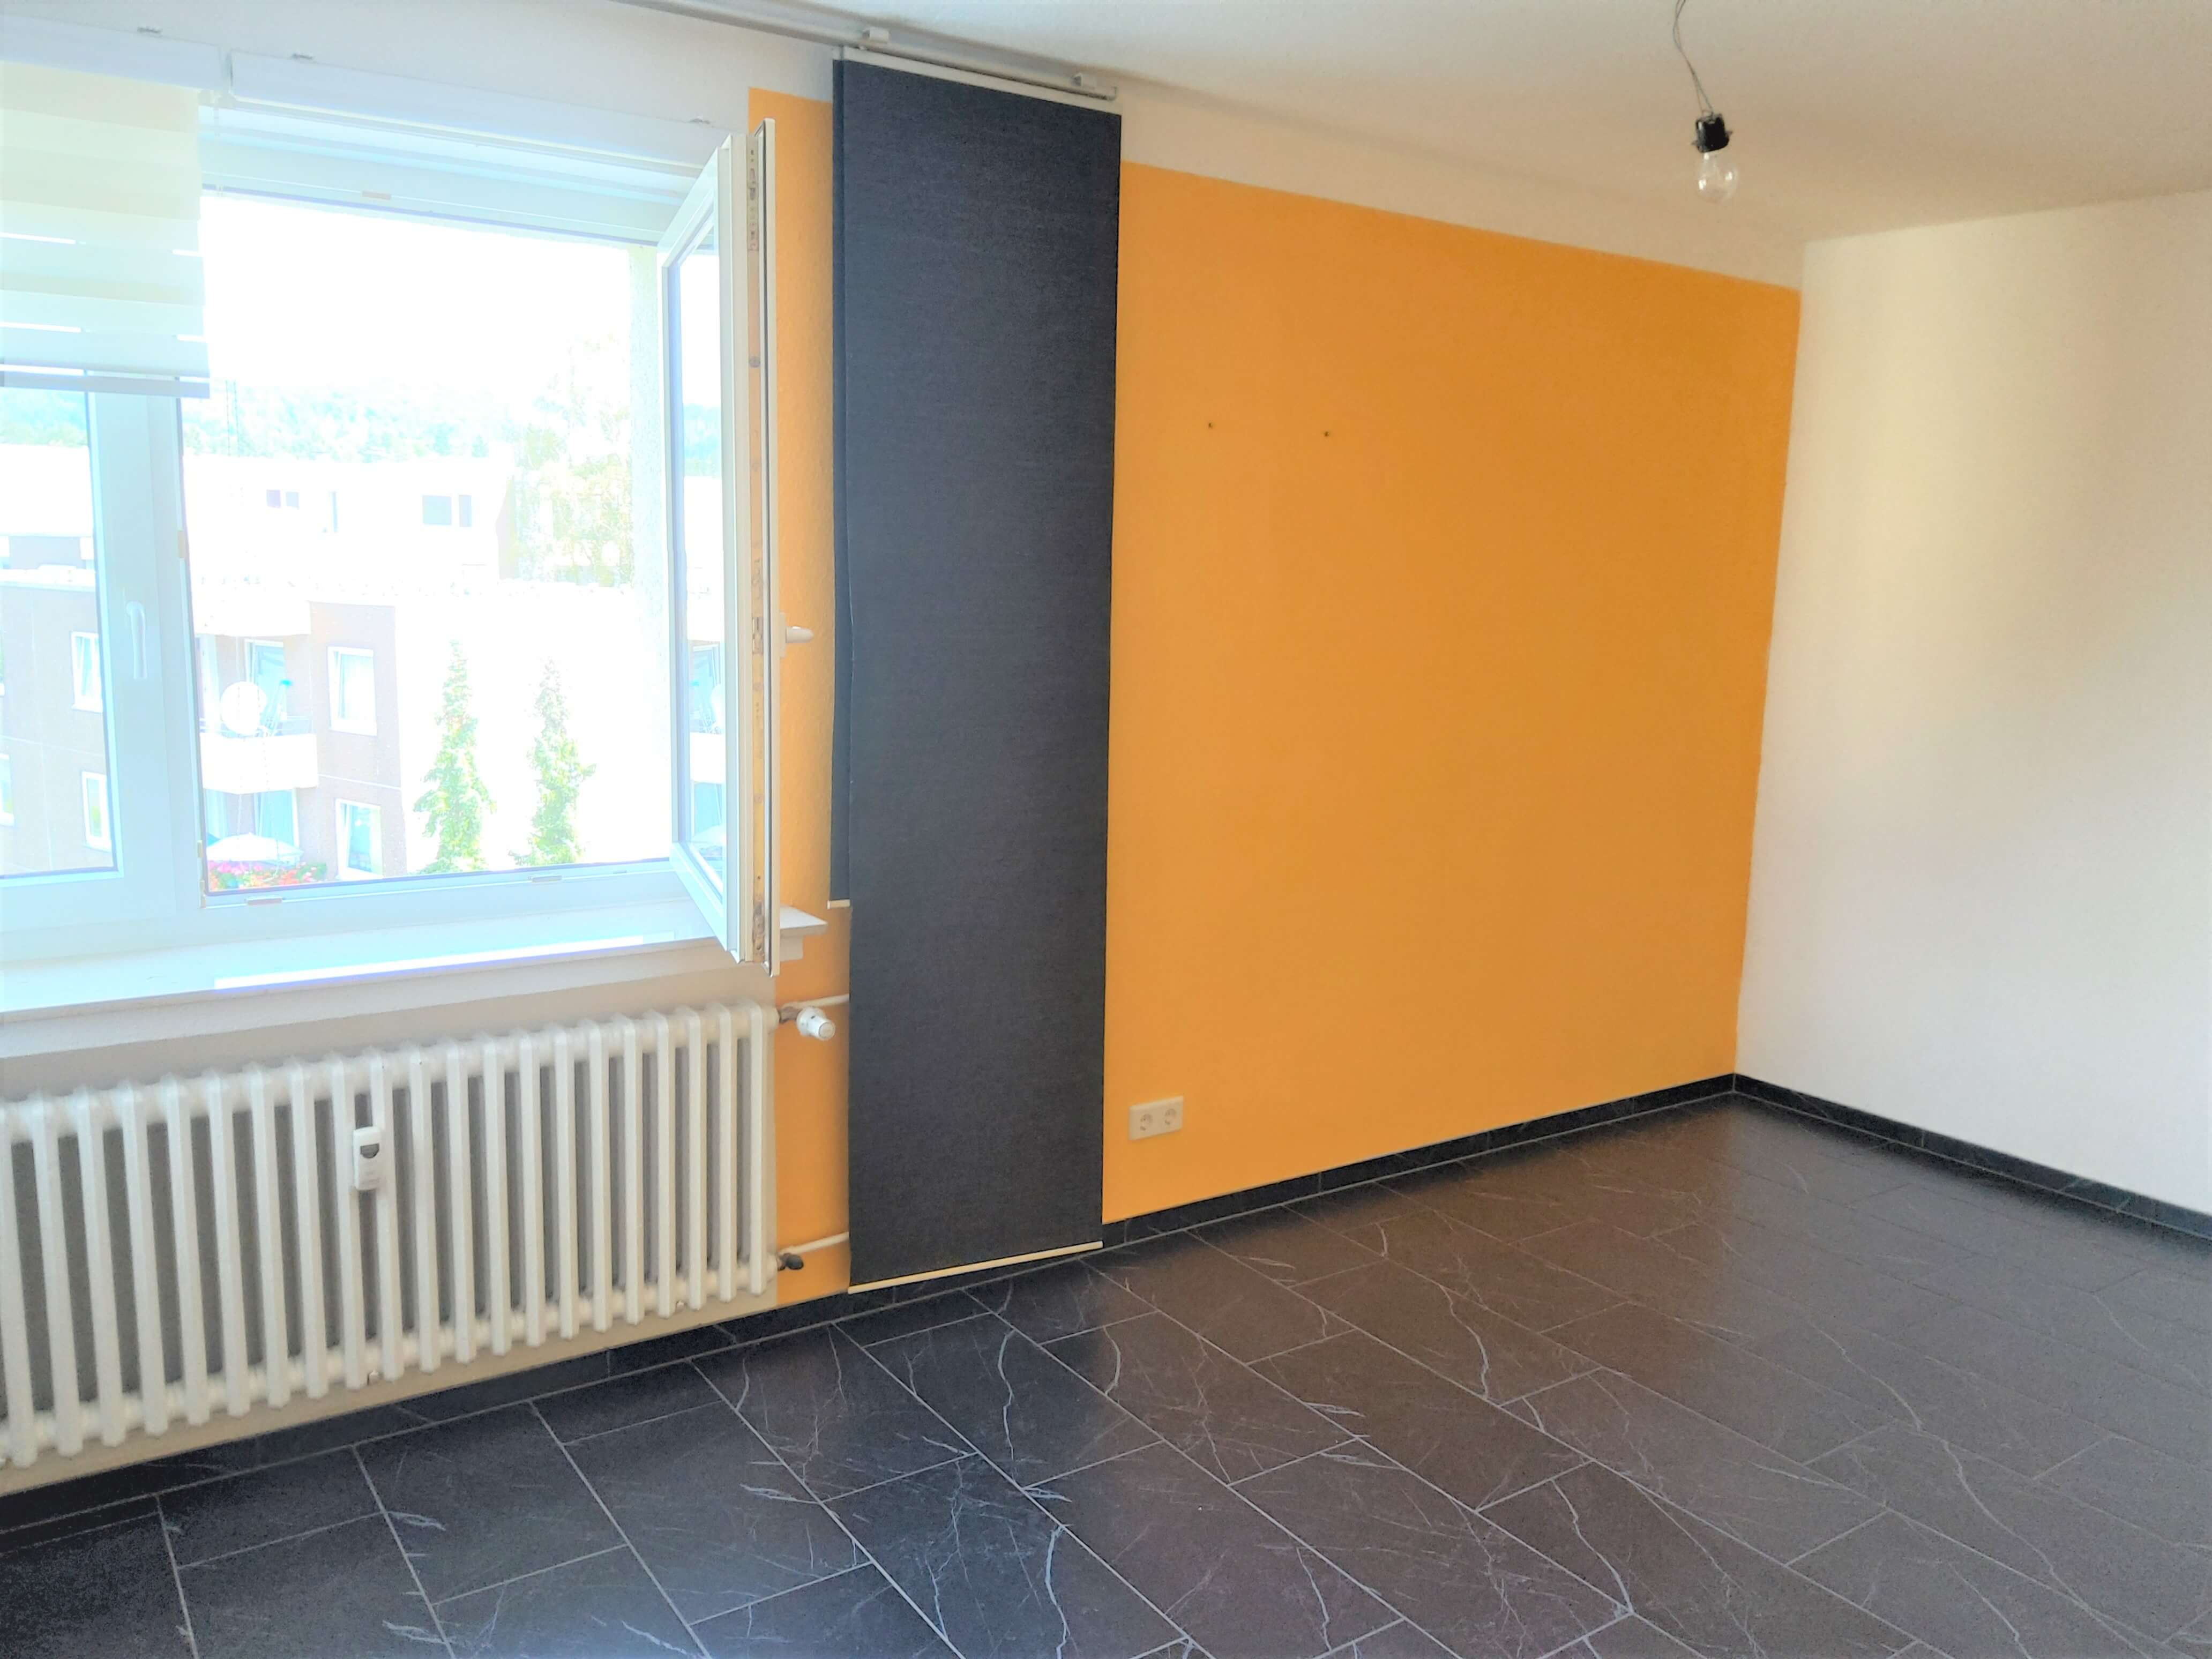 3-Zimmer-Wohnung in Bielefeld Sennestadt | ab 16.08.2020 ...